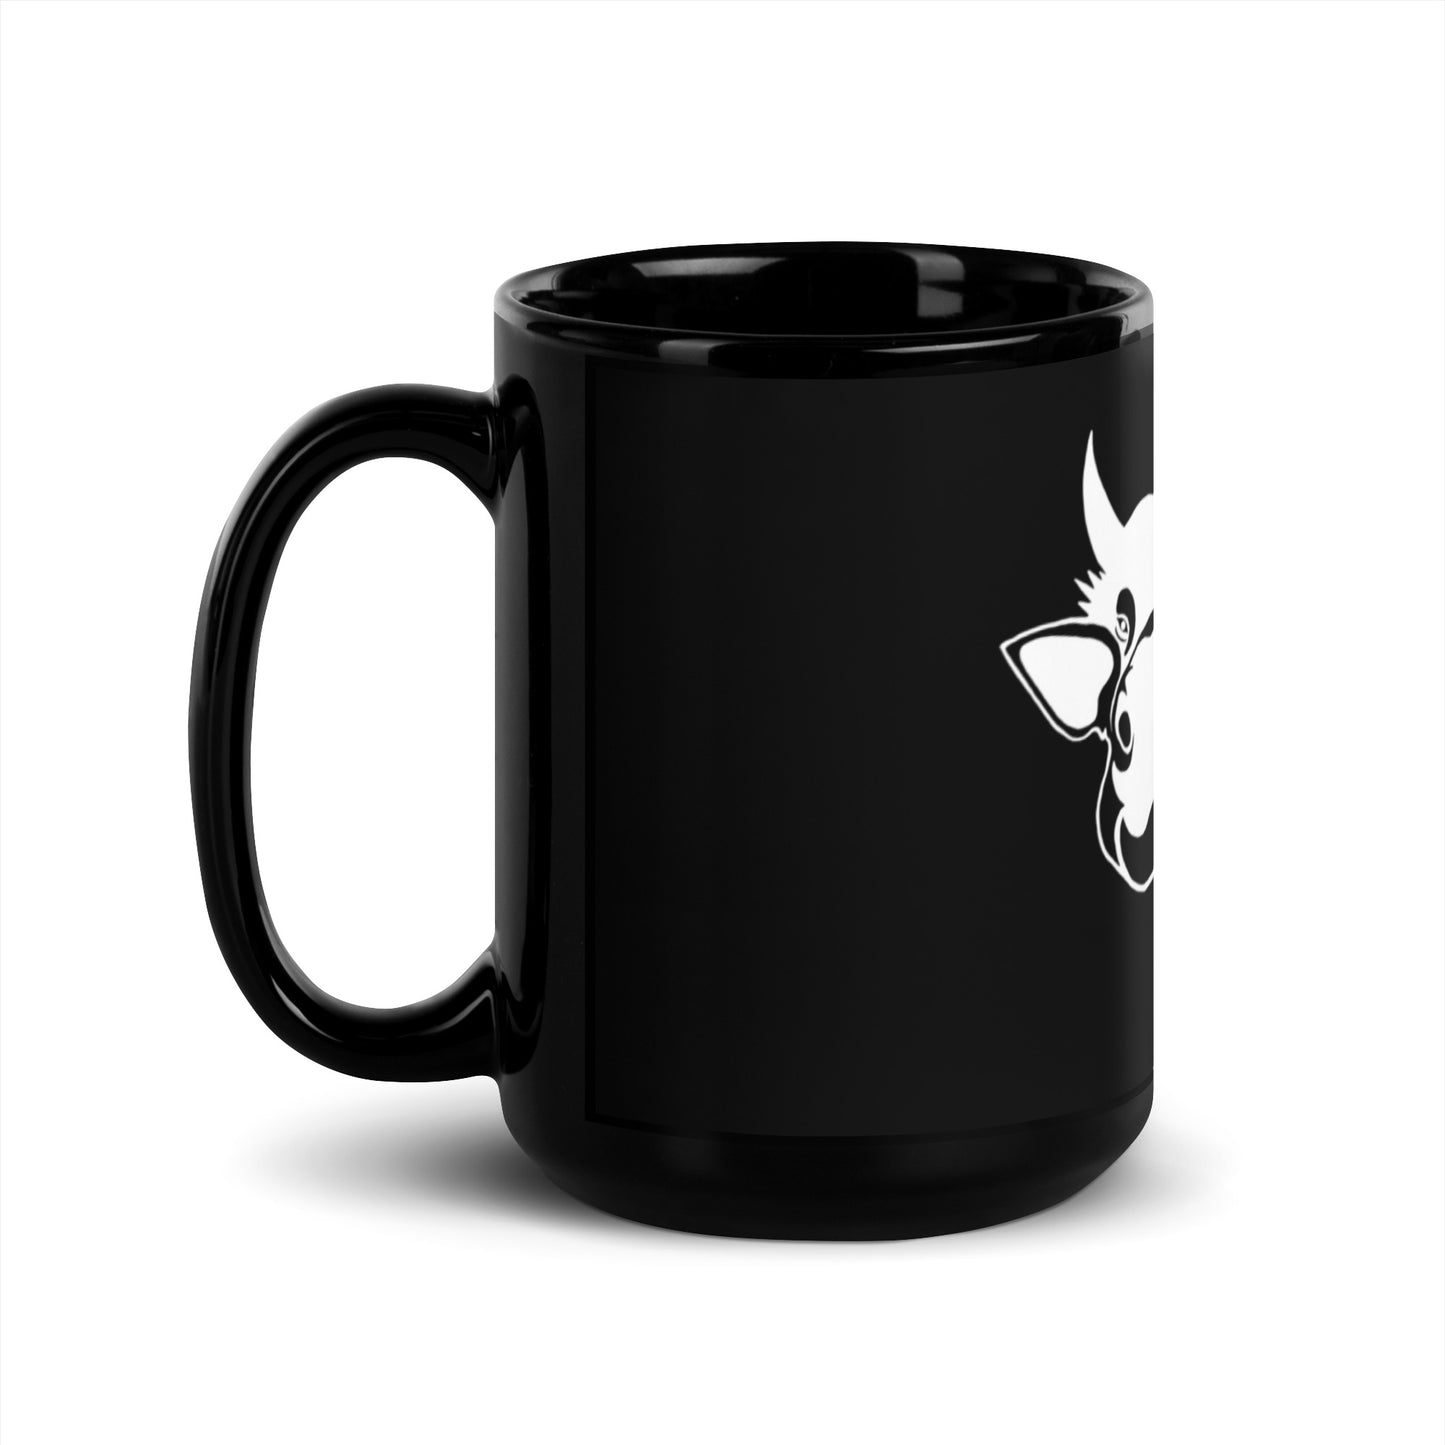 "Yo!" Cow Skate Across America Black Coffee Mug